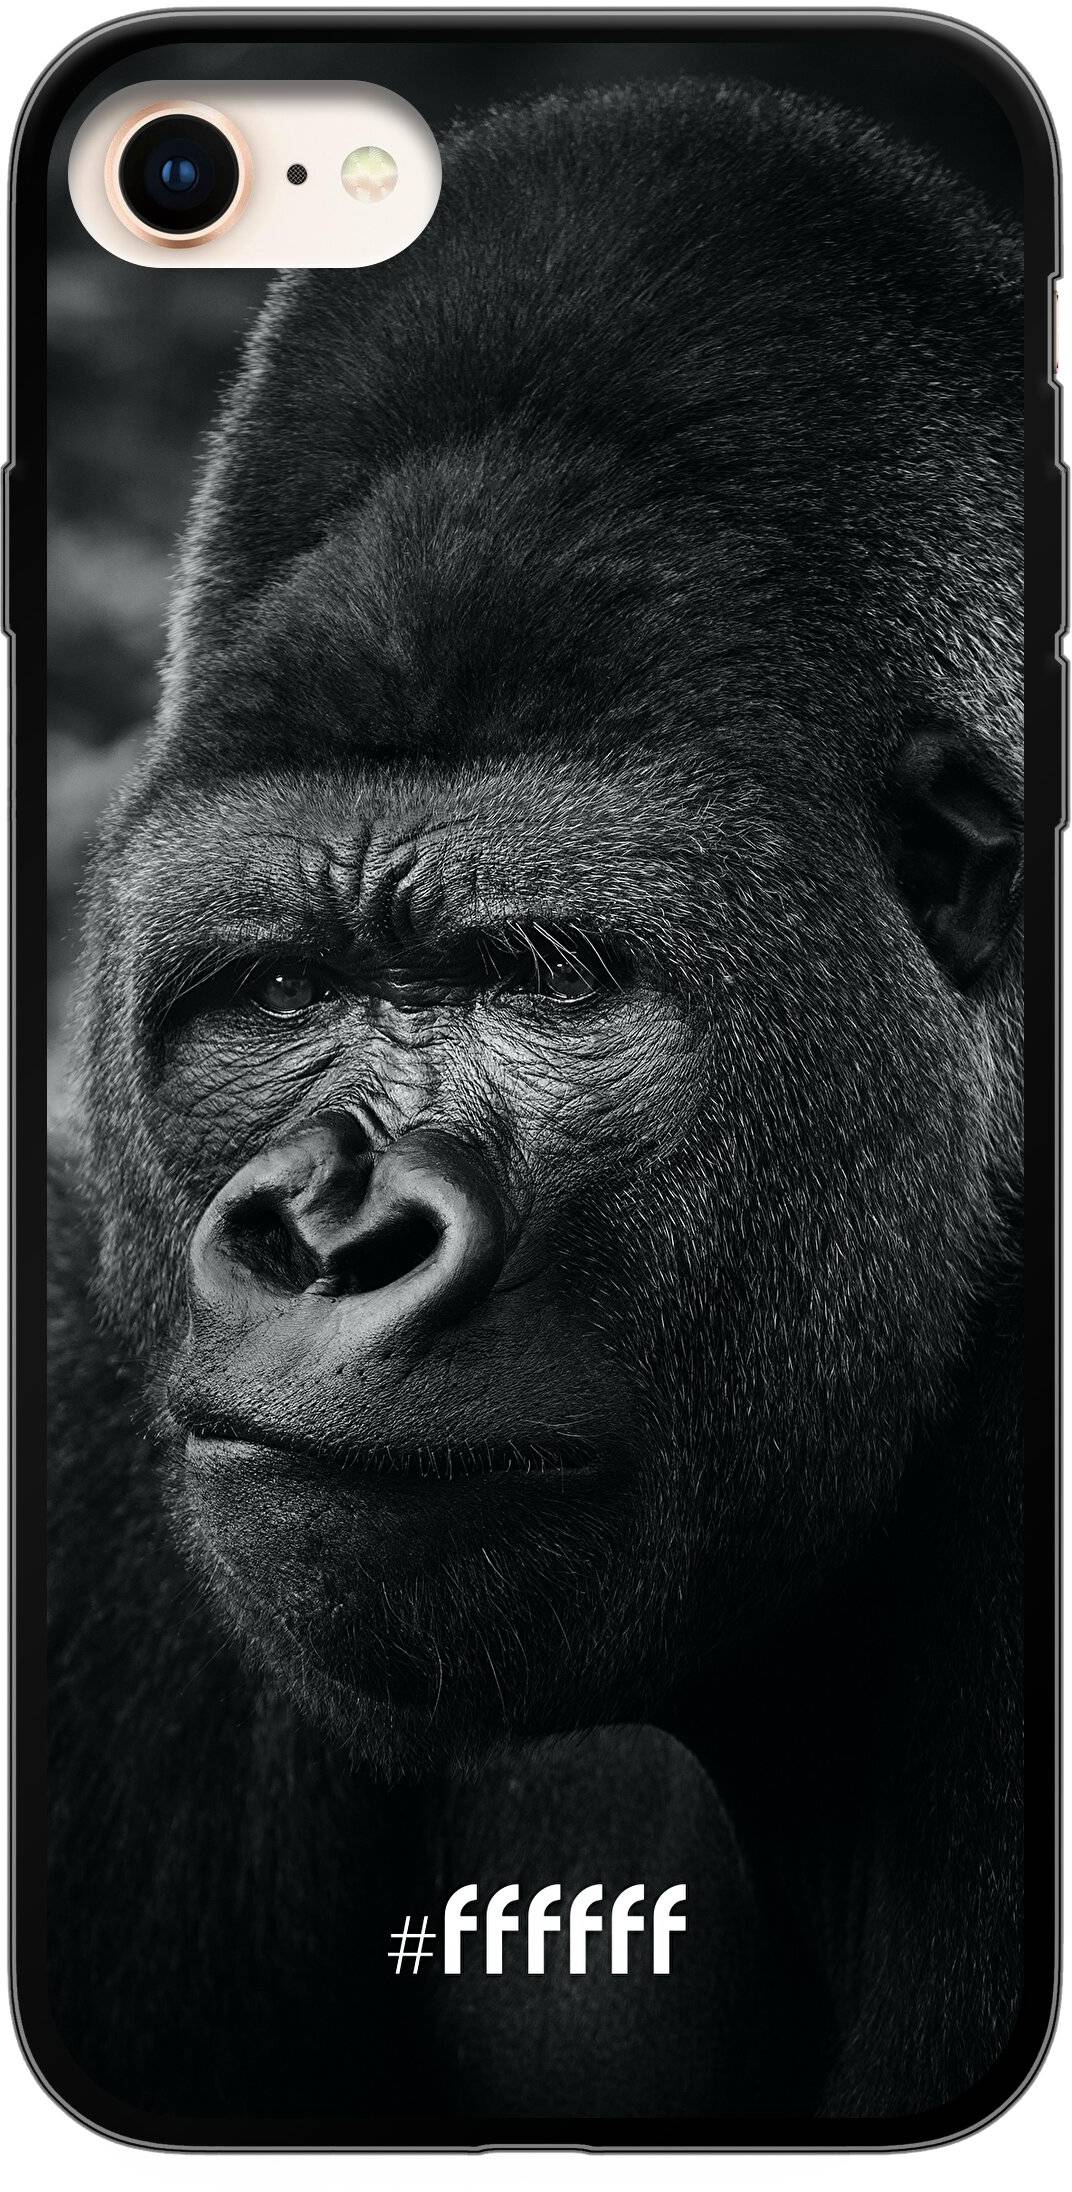 Gorilla iPhone 7